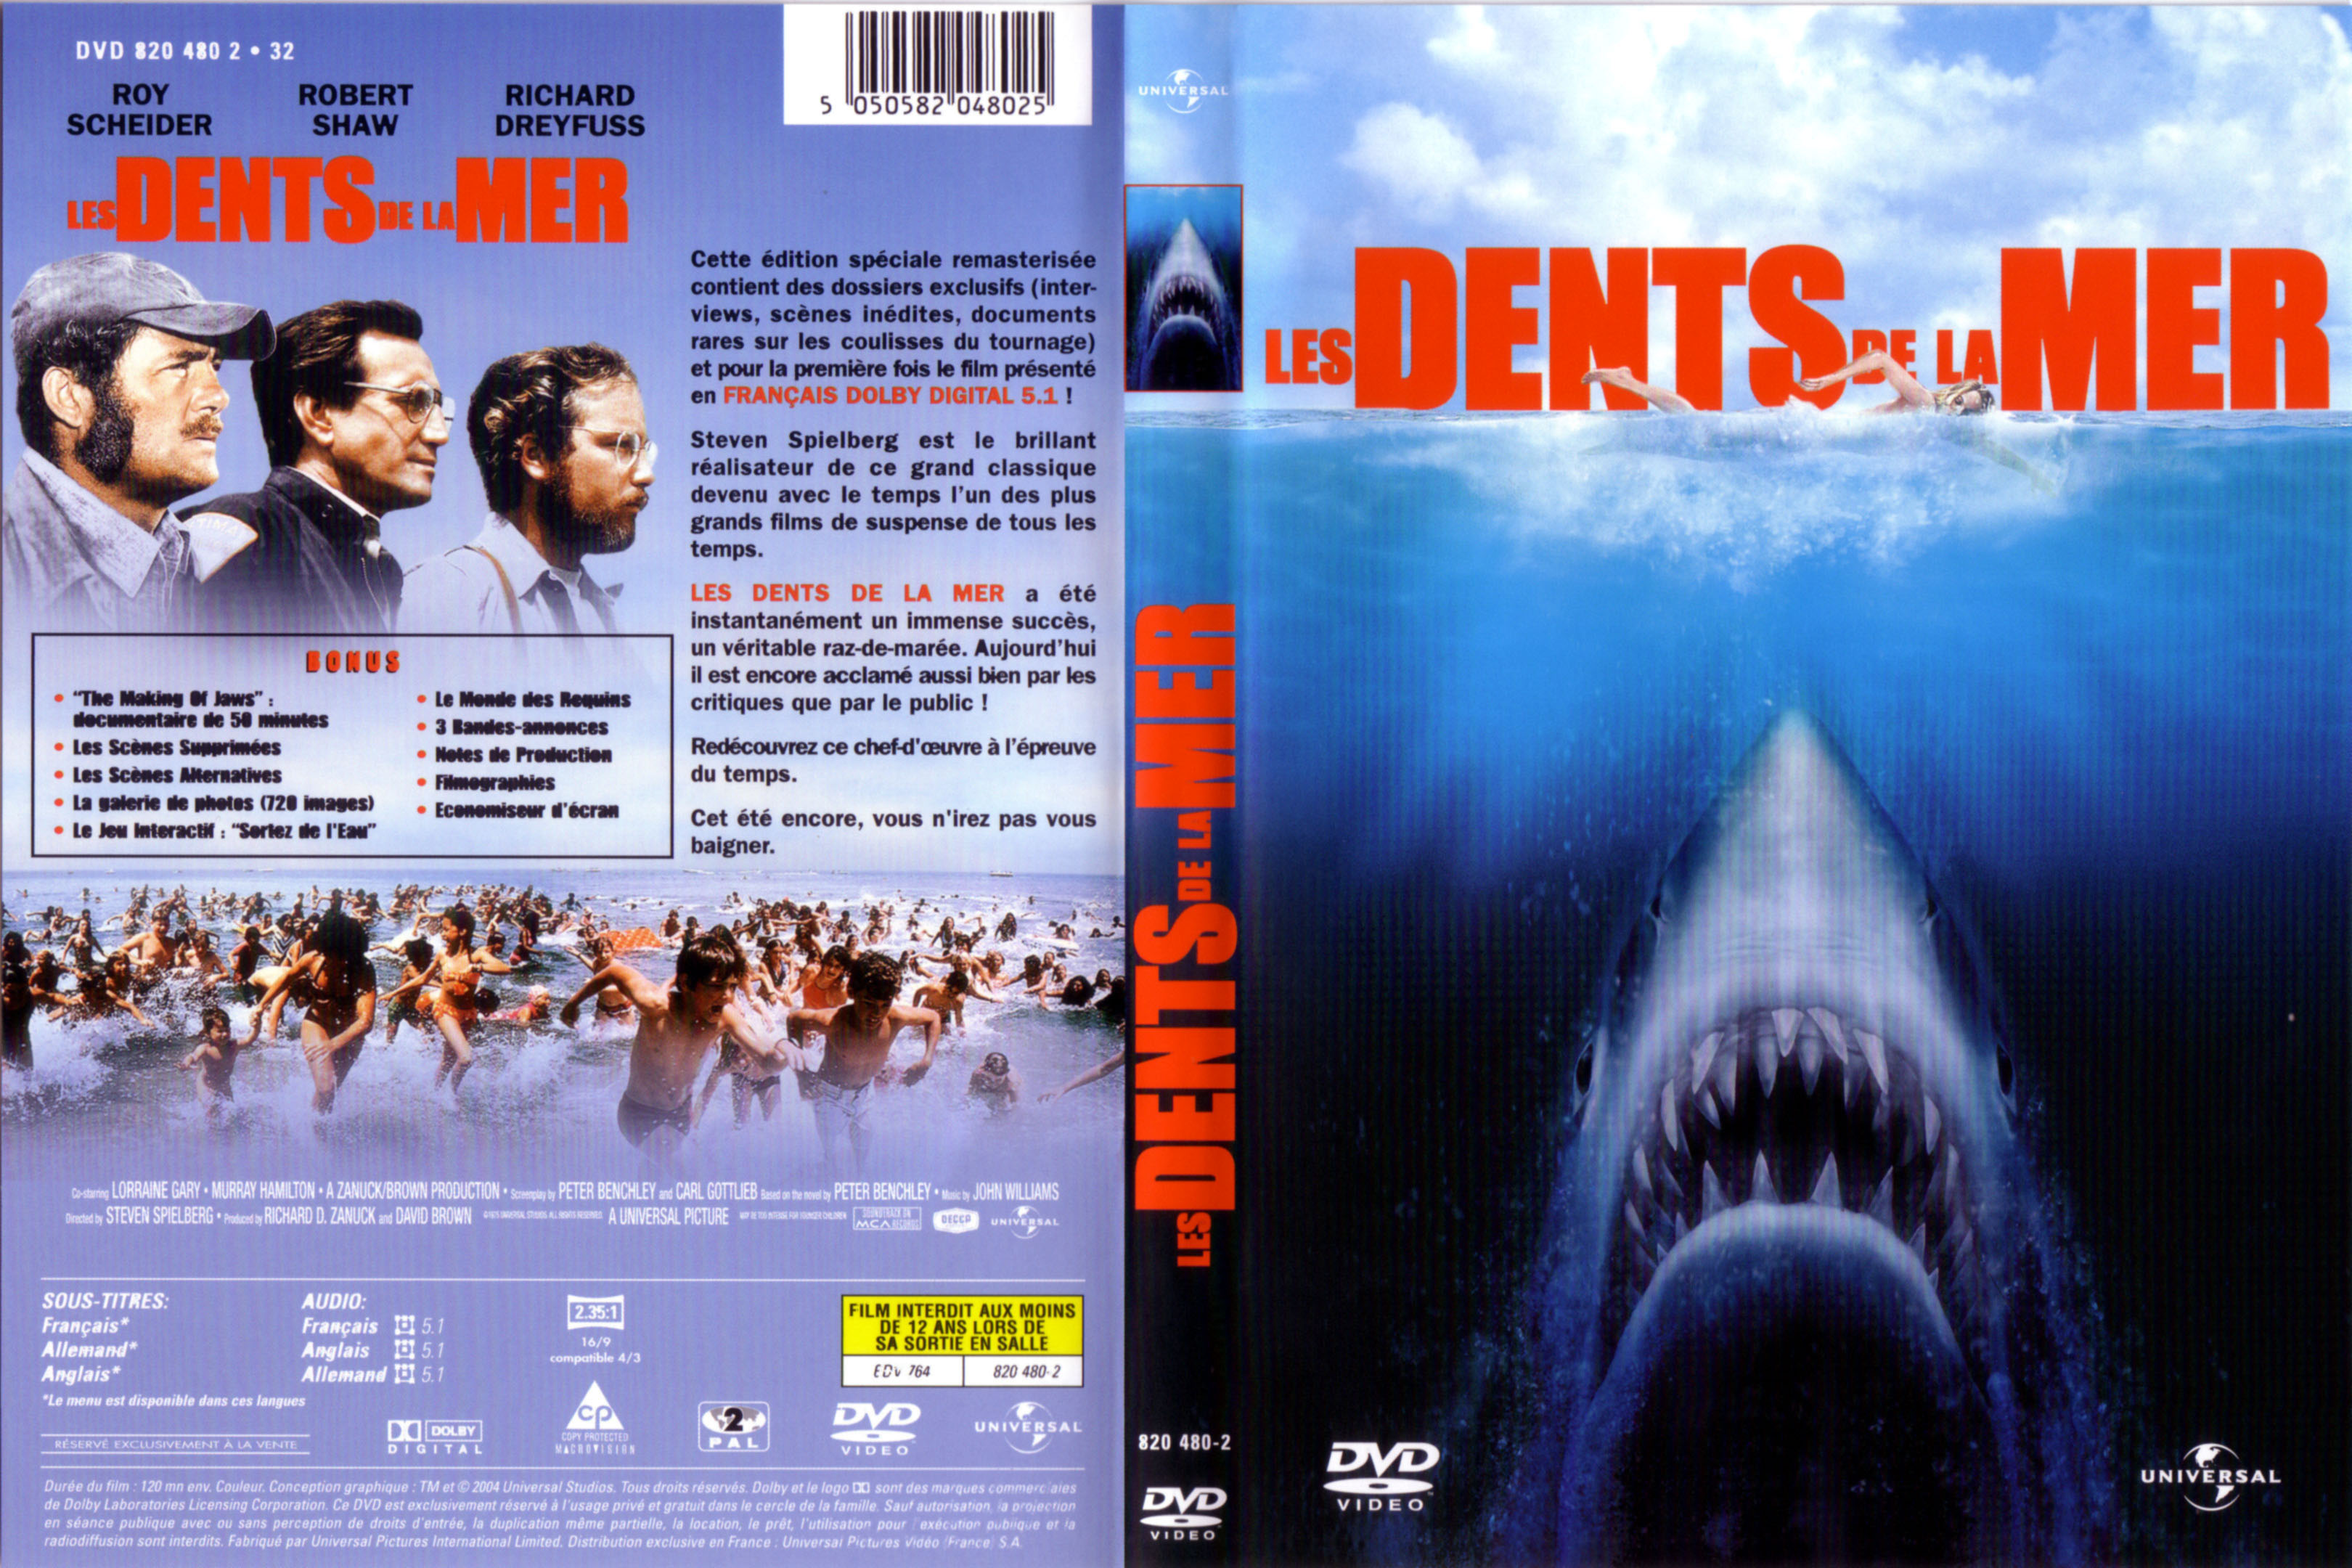 Jaquette DVD Les dents de la mer v4